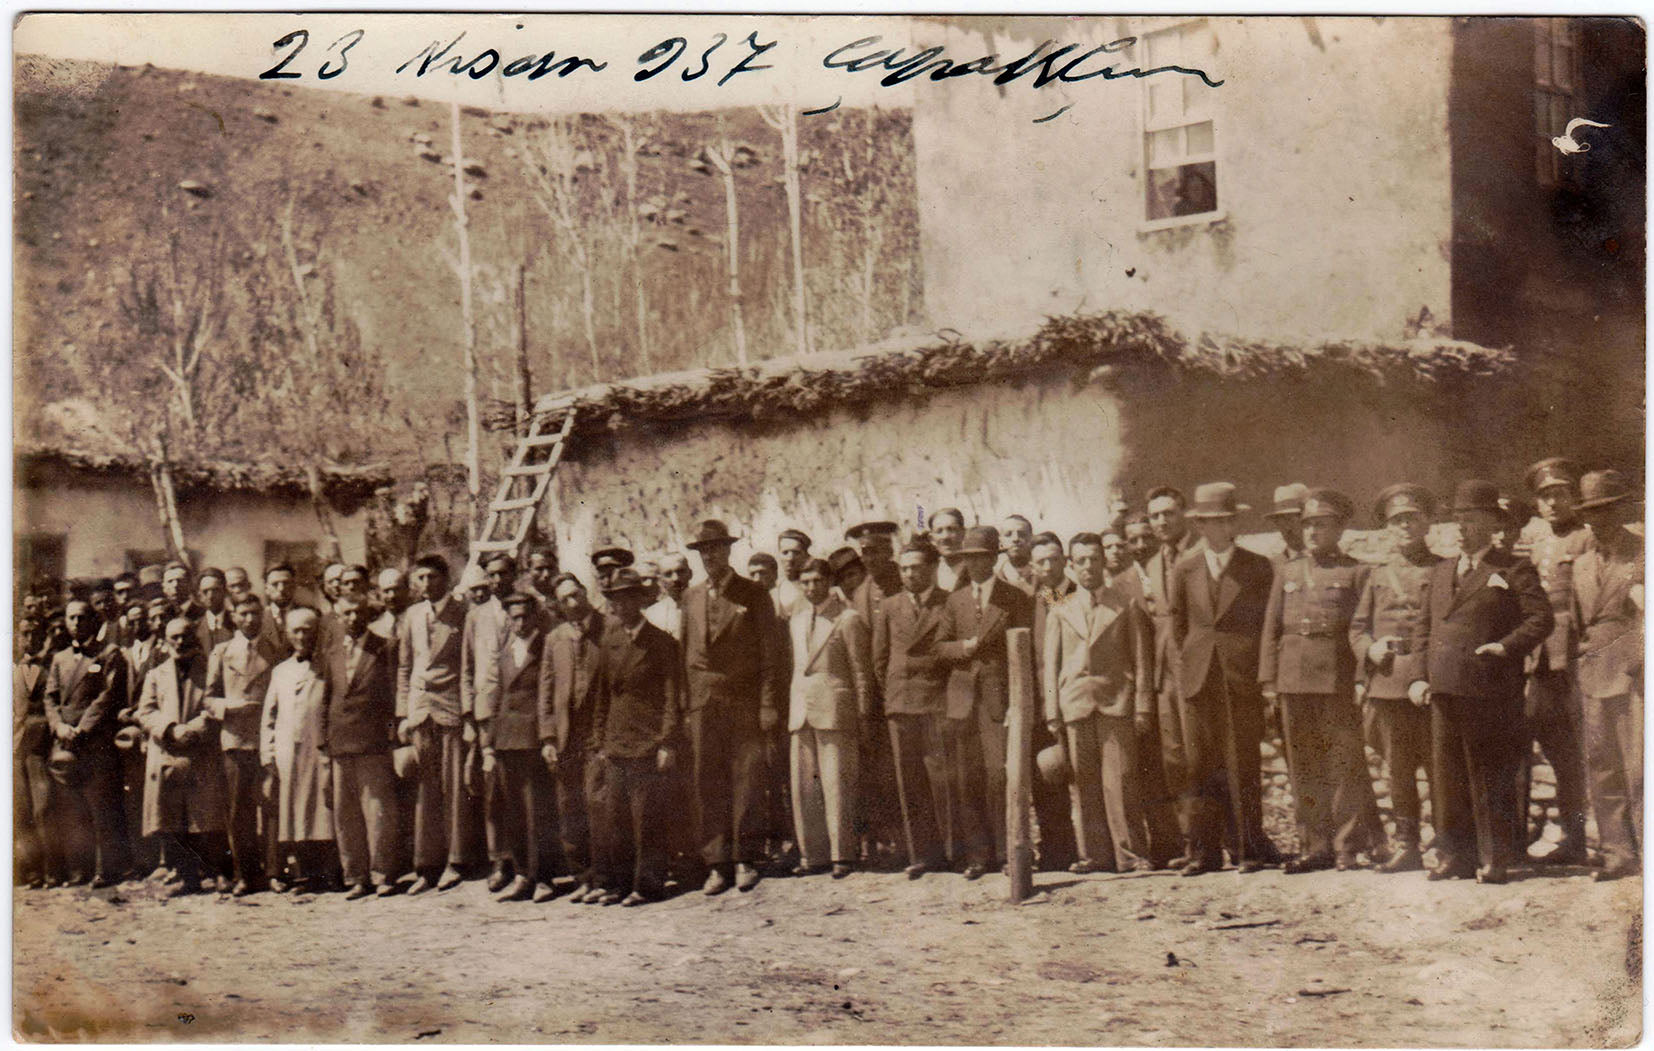 23 Nisan 1937, Anadolu'da bayram kutlamaları için bir araya gelmiş askeri ve sivil grup